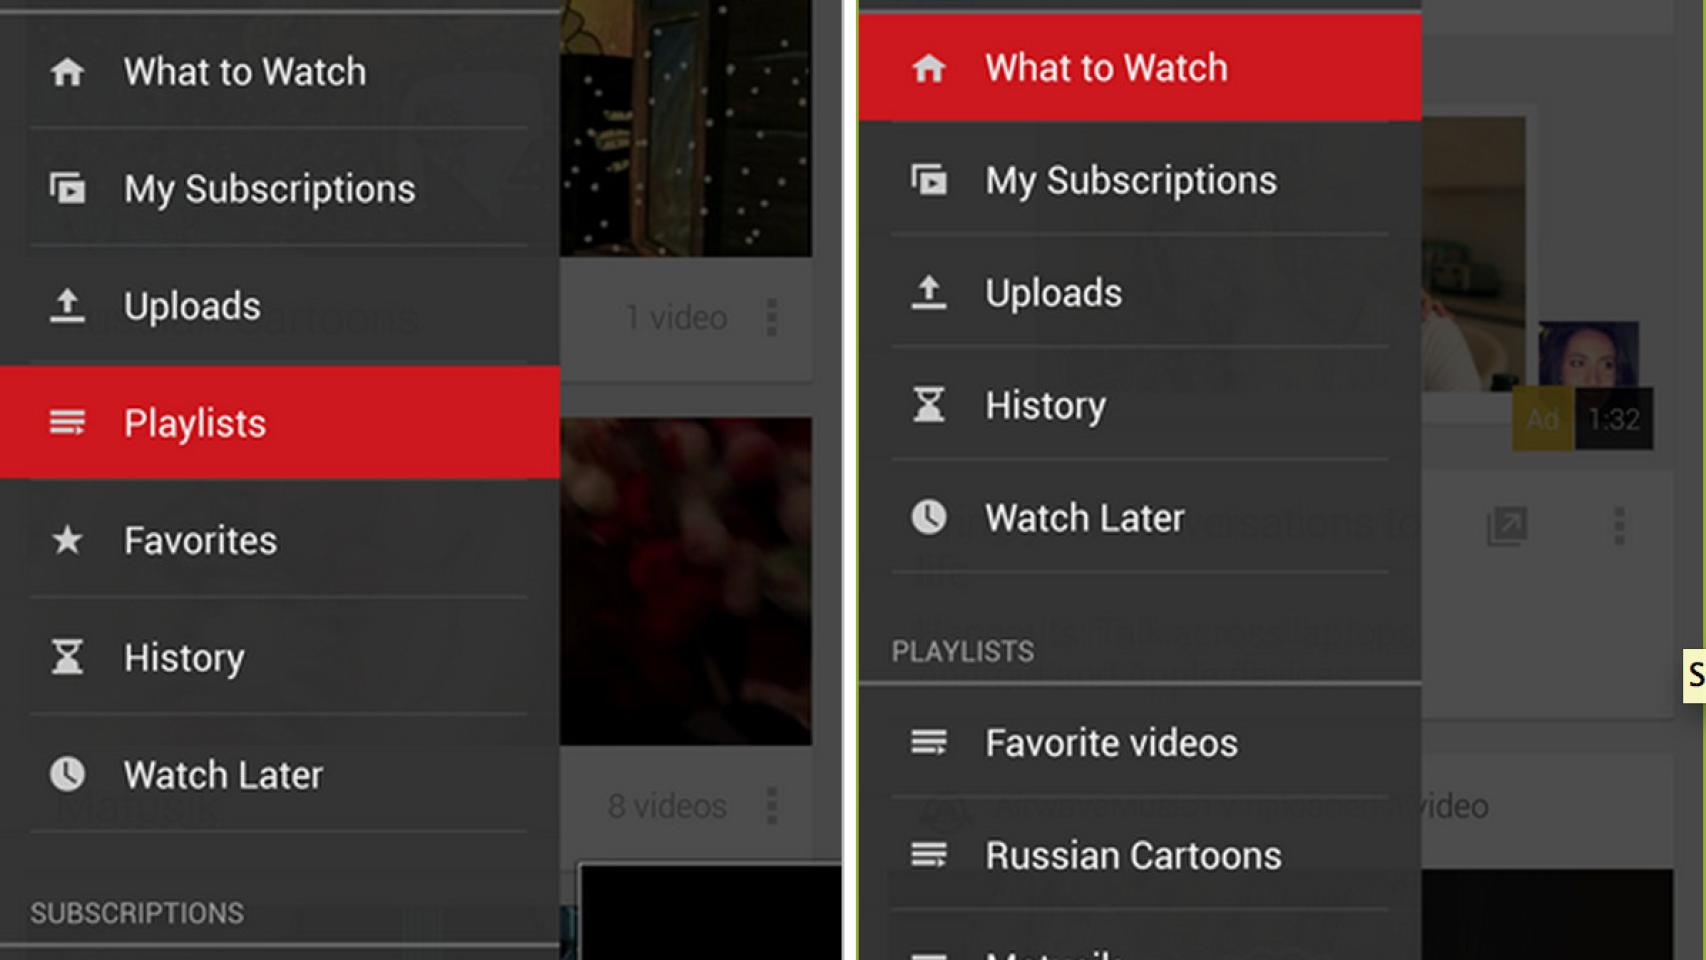 Nuevo Youtube 5.5 con mejoras en el diseño y respuesta de comentarios, descárgalo para tu Android